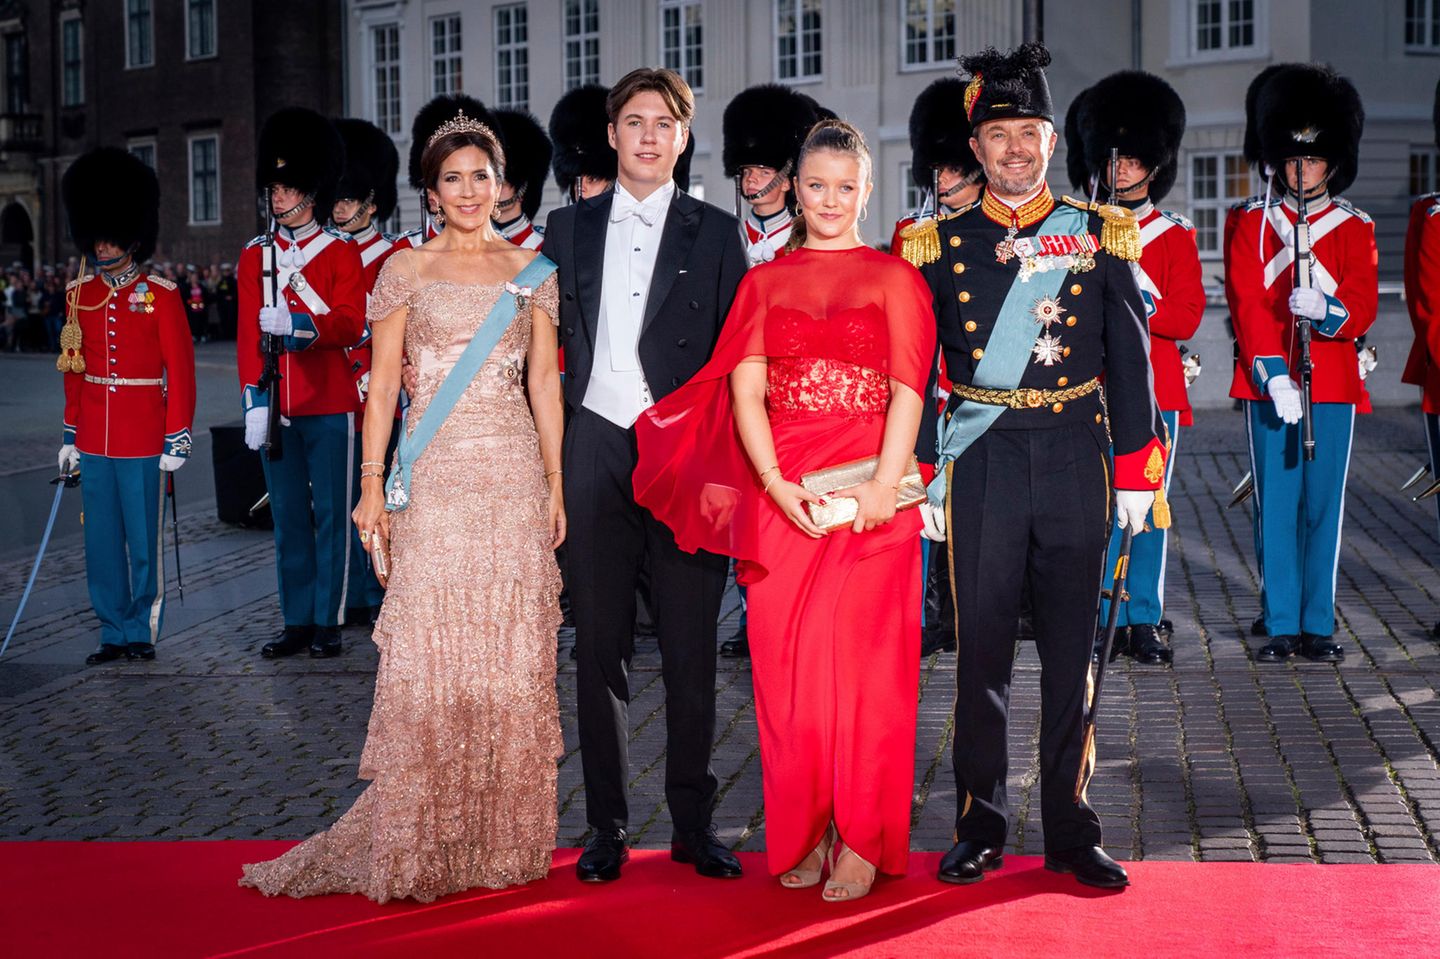 Prinzessin Mary, Prinz Christian, Prinzessin Isabell und Prinz Frederik strahlen alle über das ganze Gesicht. Nur die Zwillinge Josephine und Vincent sind nicht mit dabei gewesen.